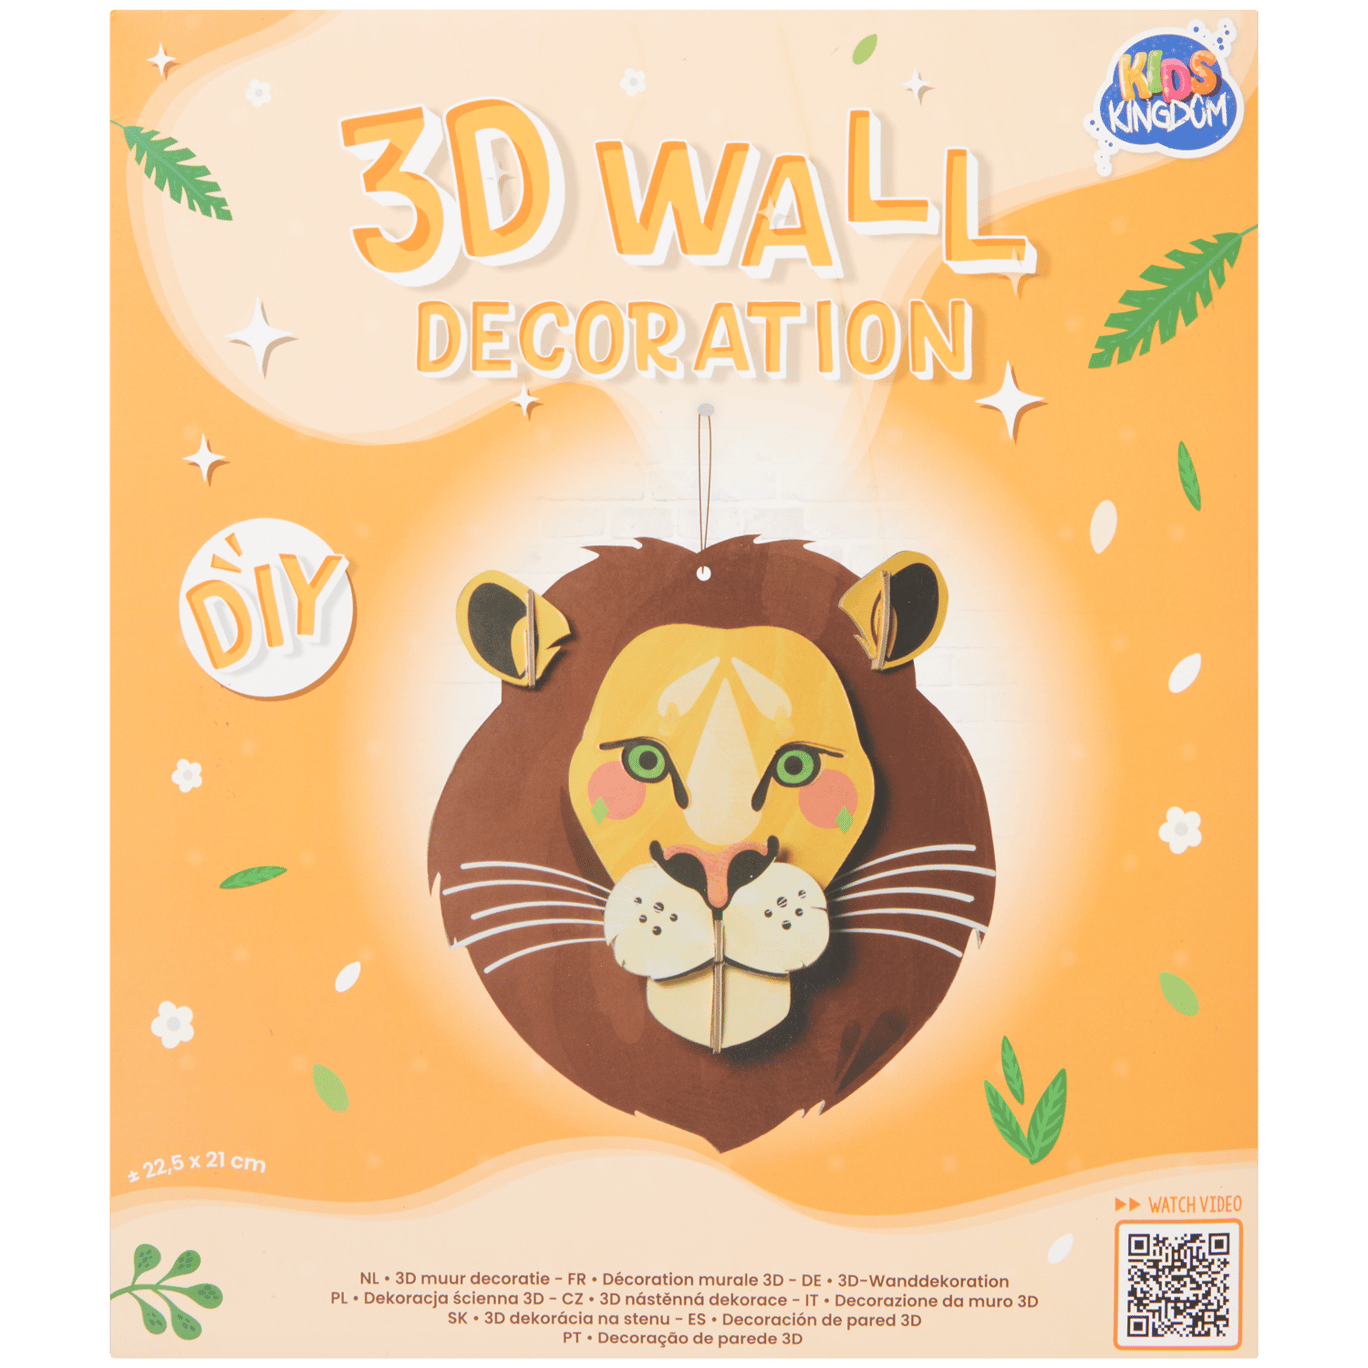 Crea tu propia decoración en 3D Kids Kingdom